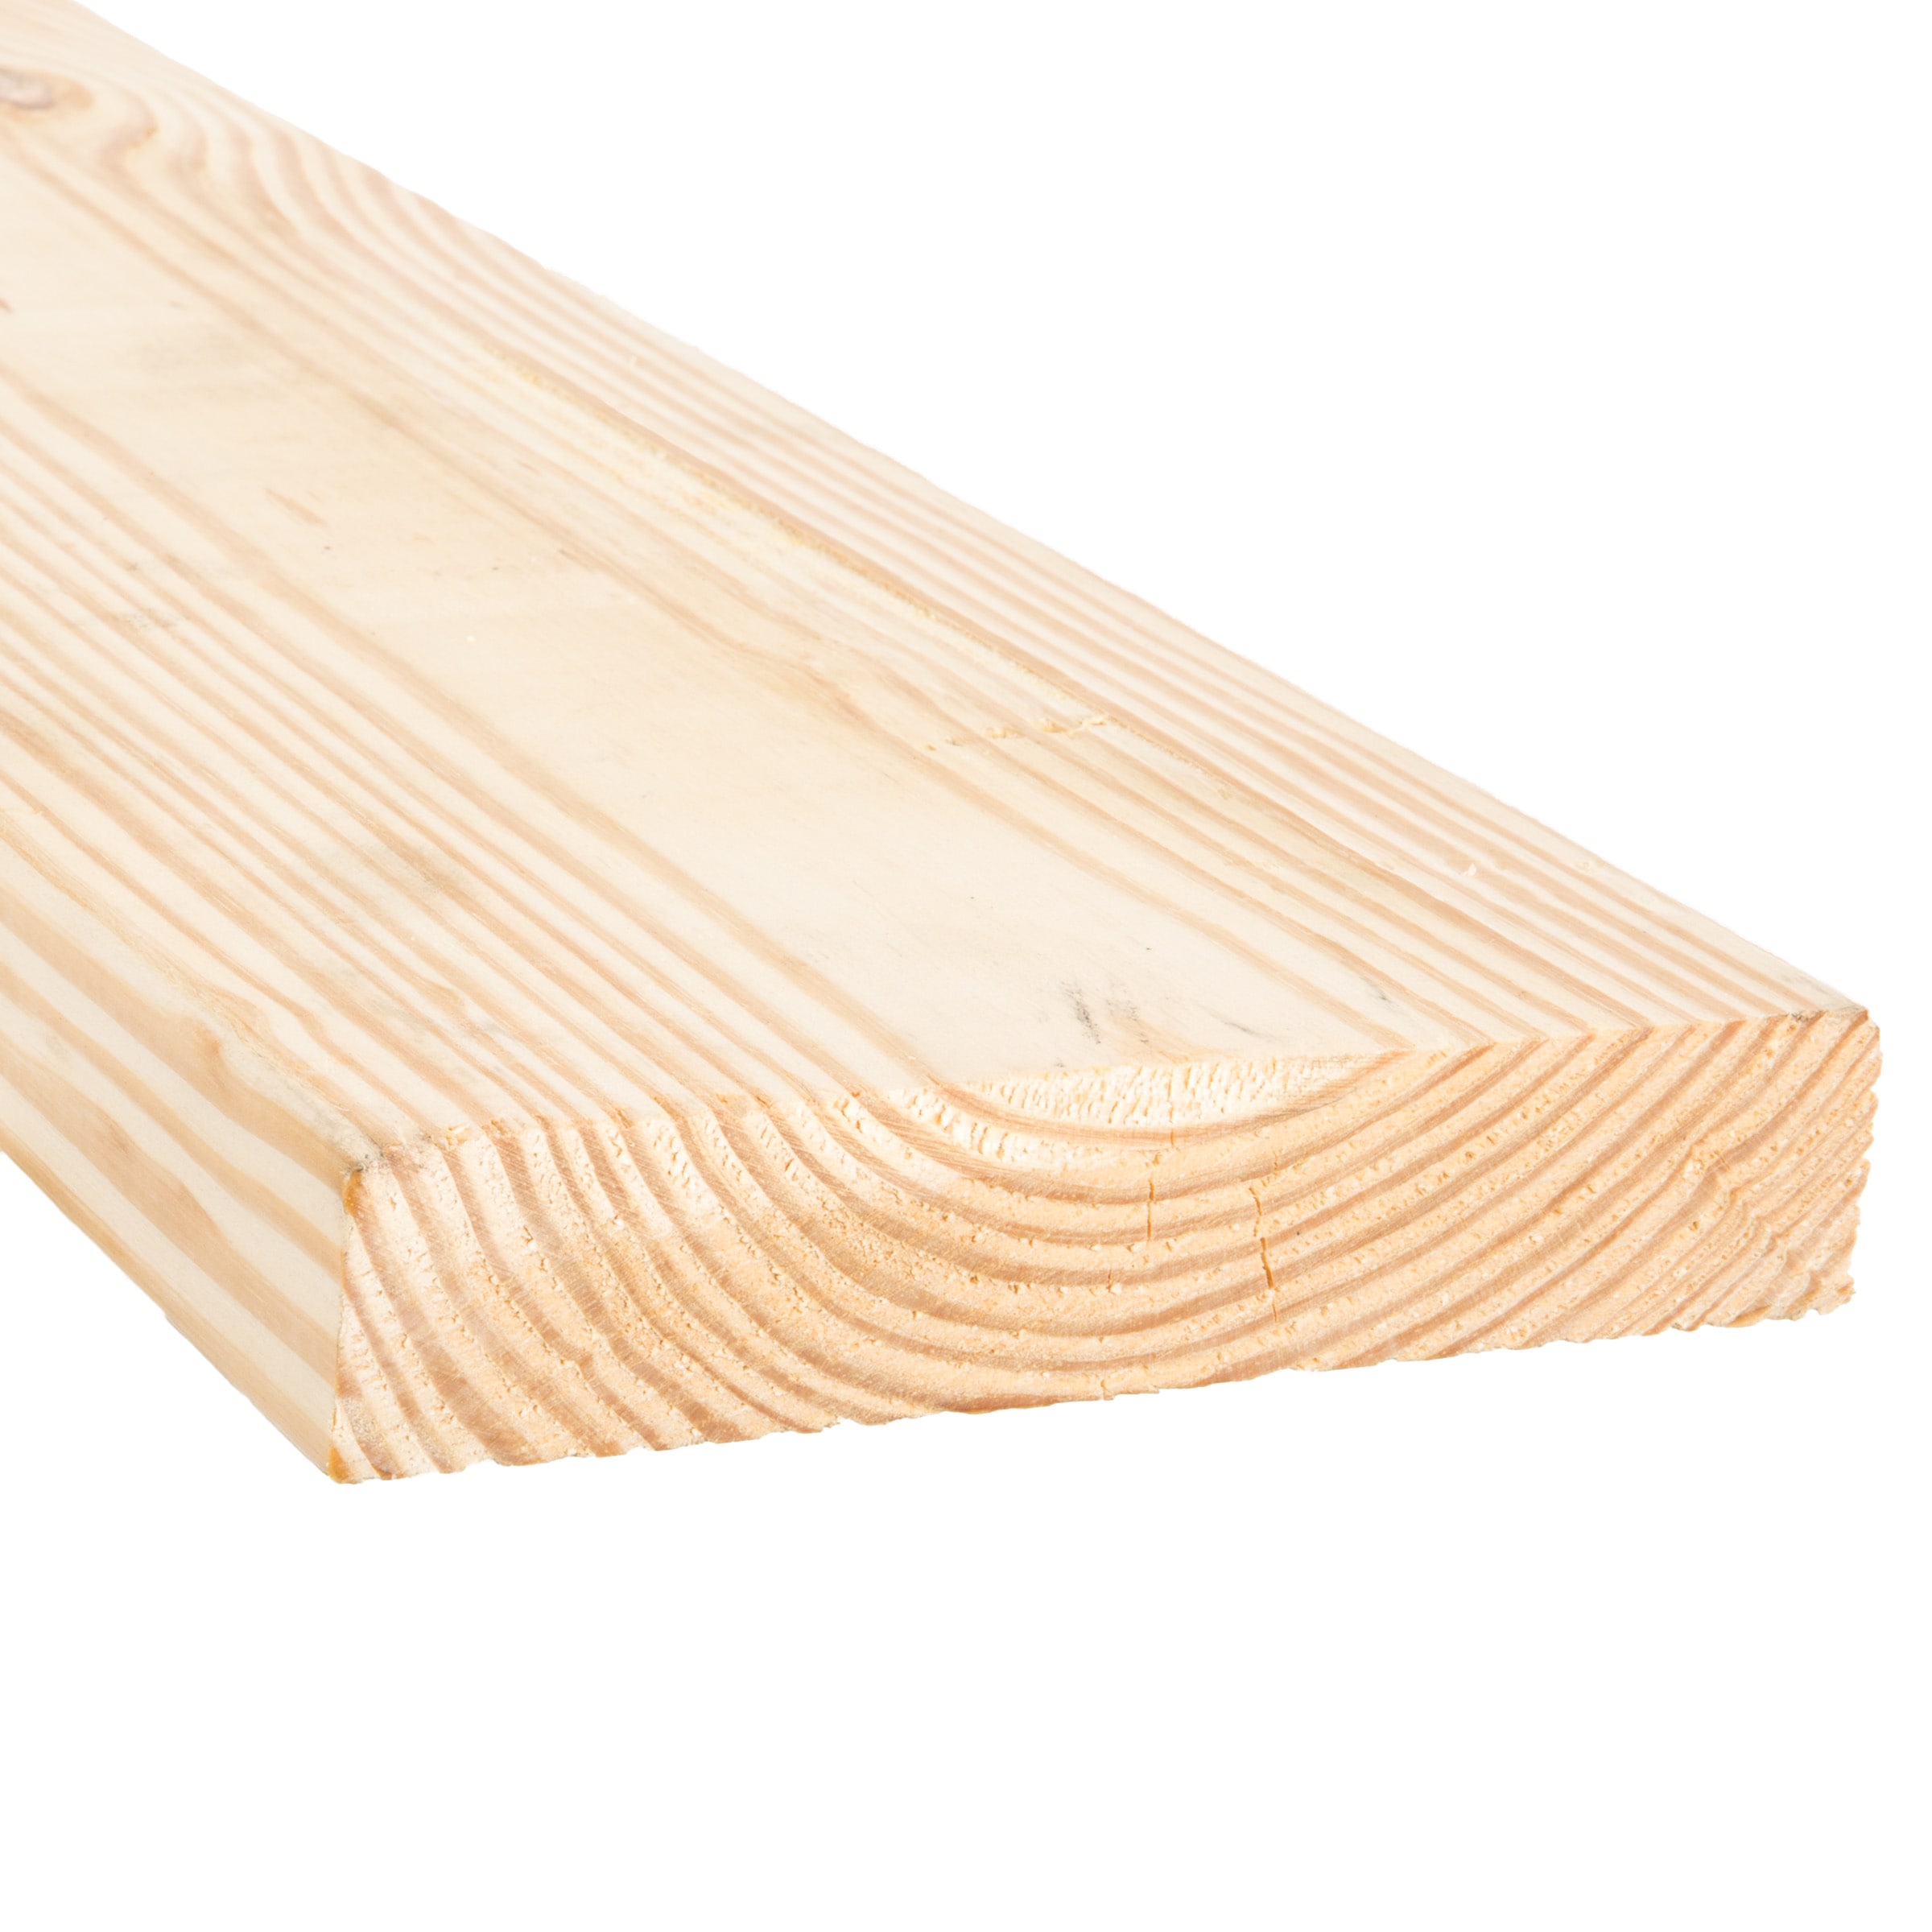 Pine Dimensional Lumber at Lowes.com